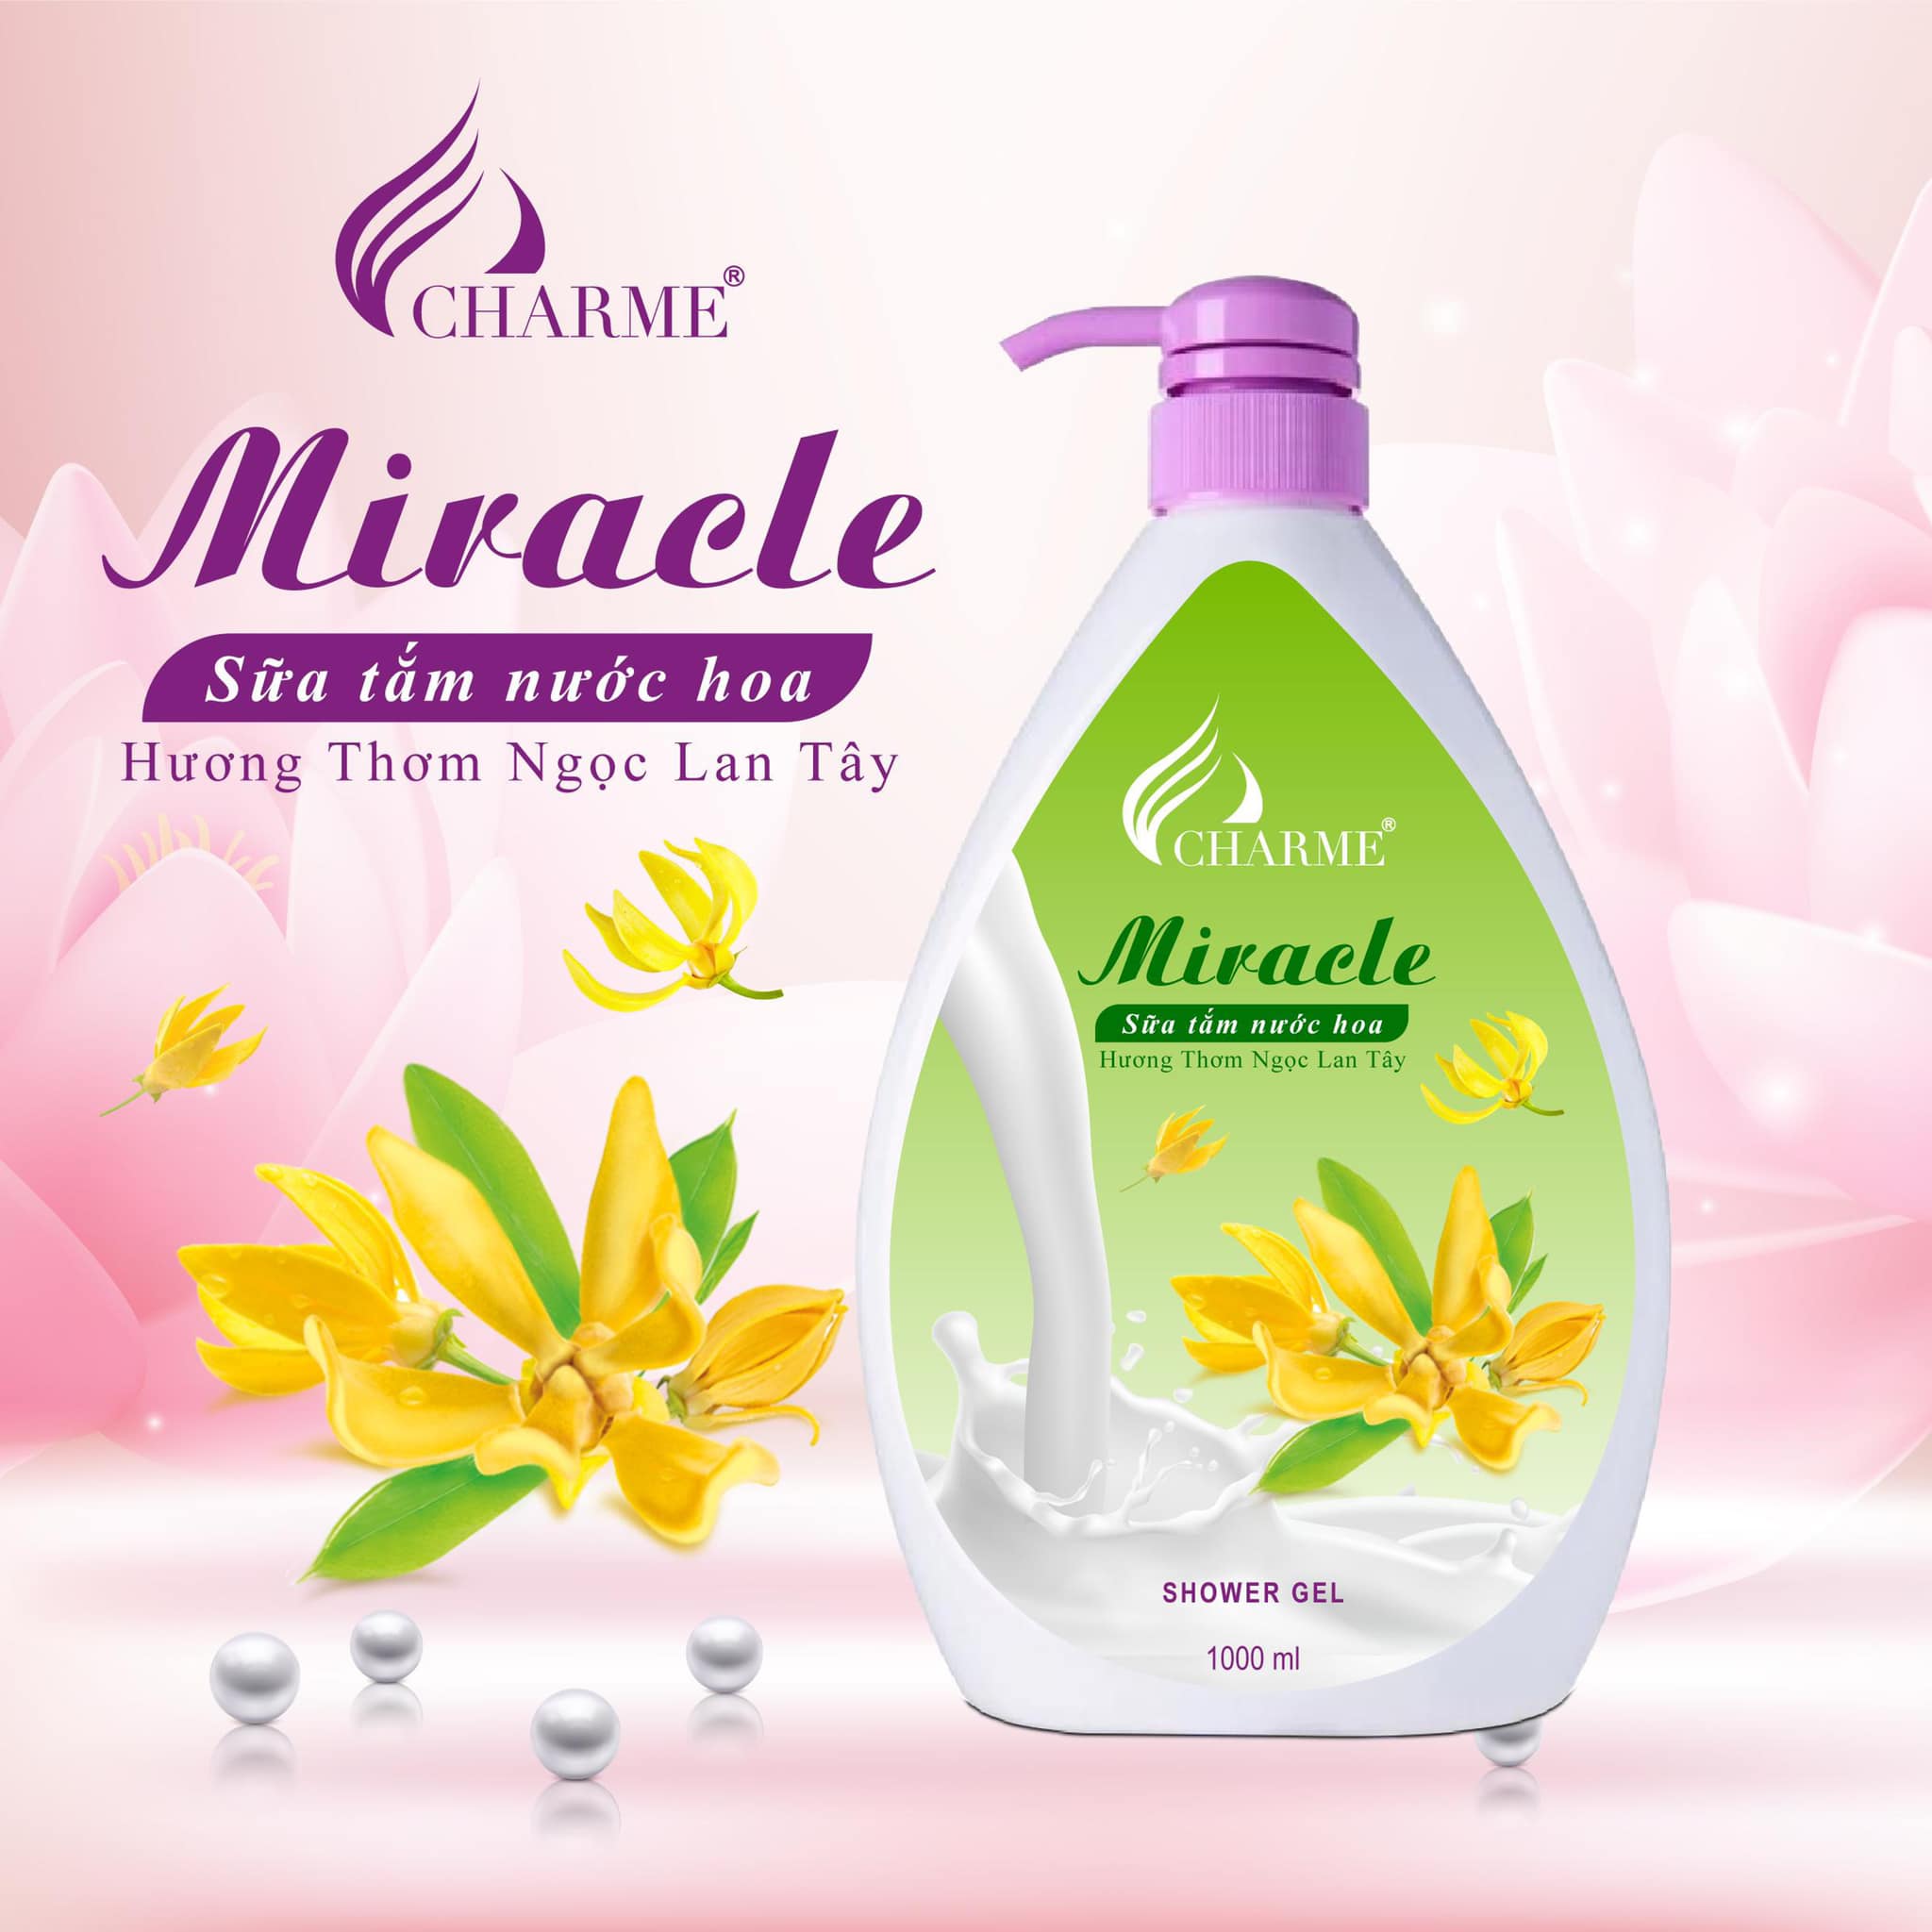 Sữa tắm nước hoa Charme Miracle 1000ml hương Ngọc Lan Tây